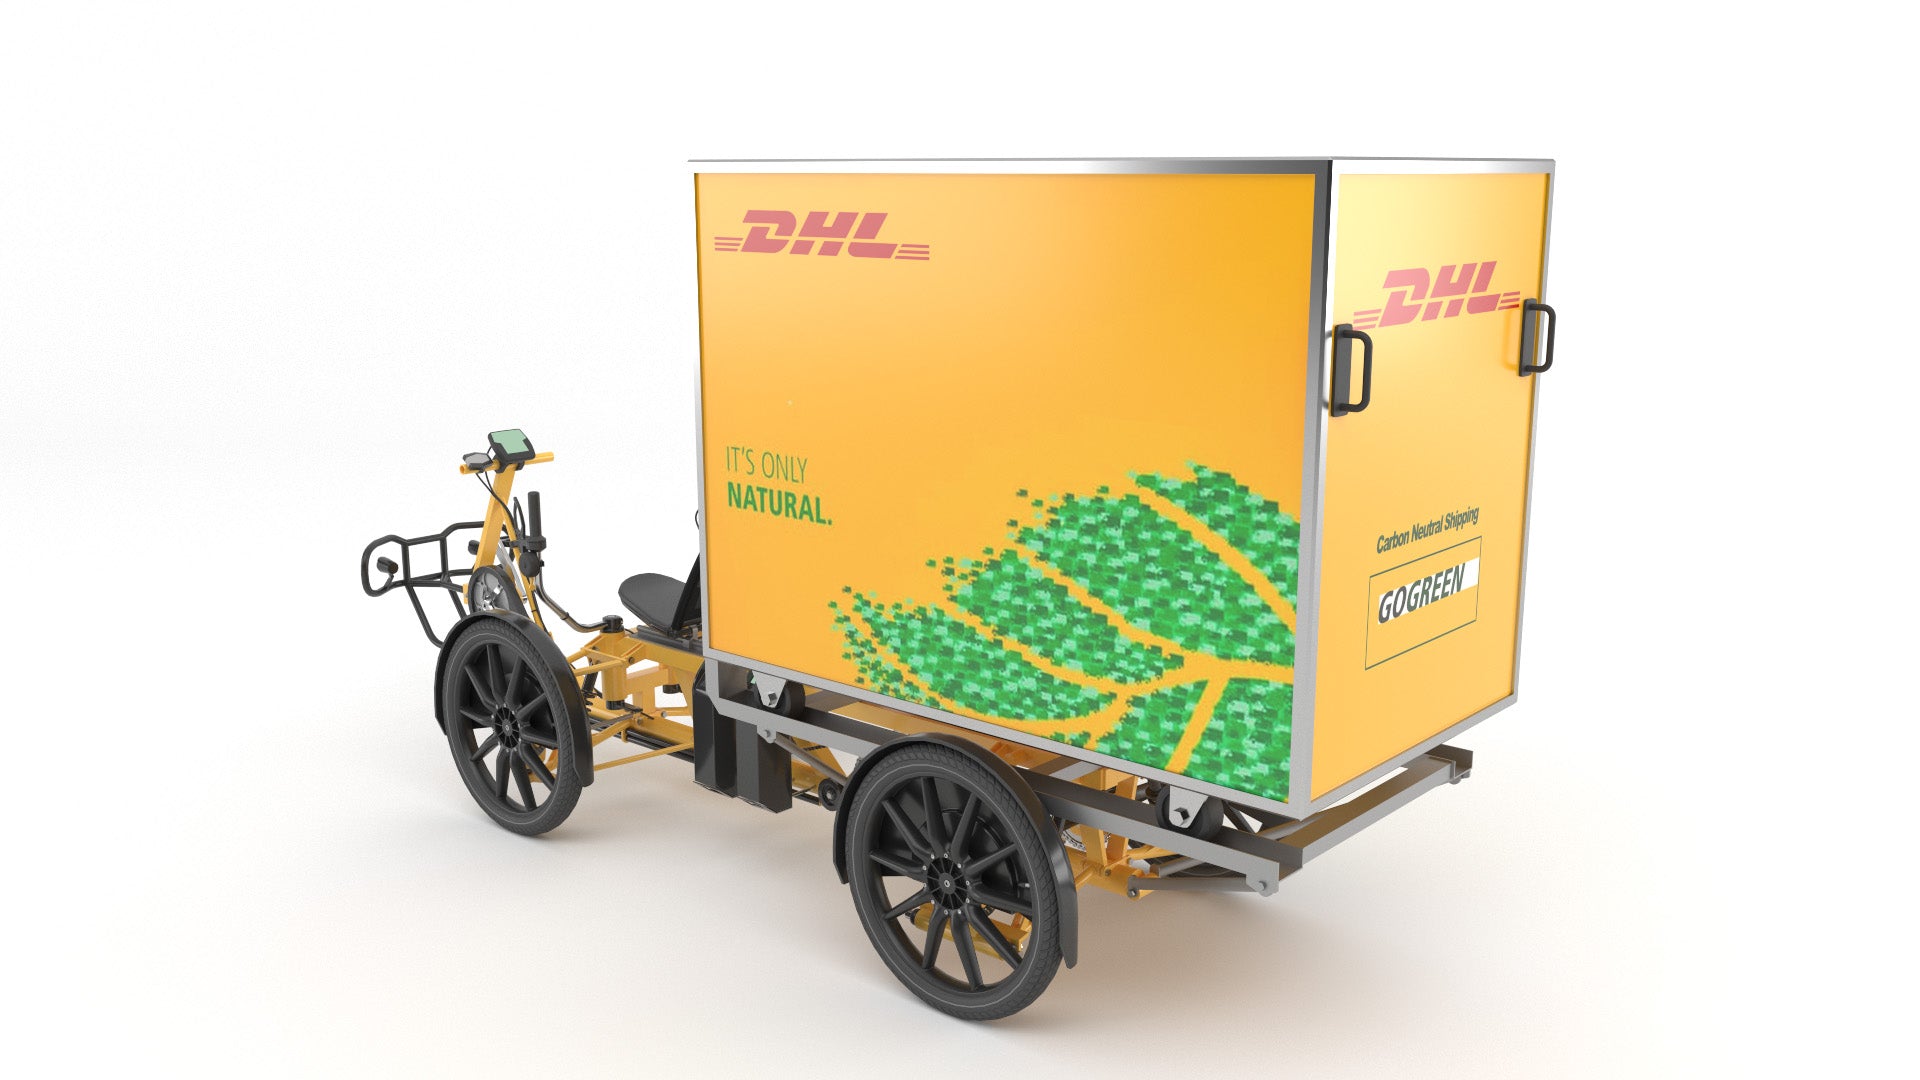 DHL parcel delivery bike 3D model